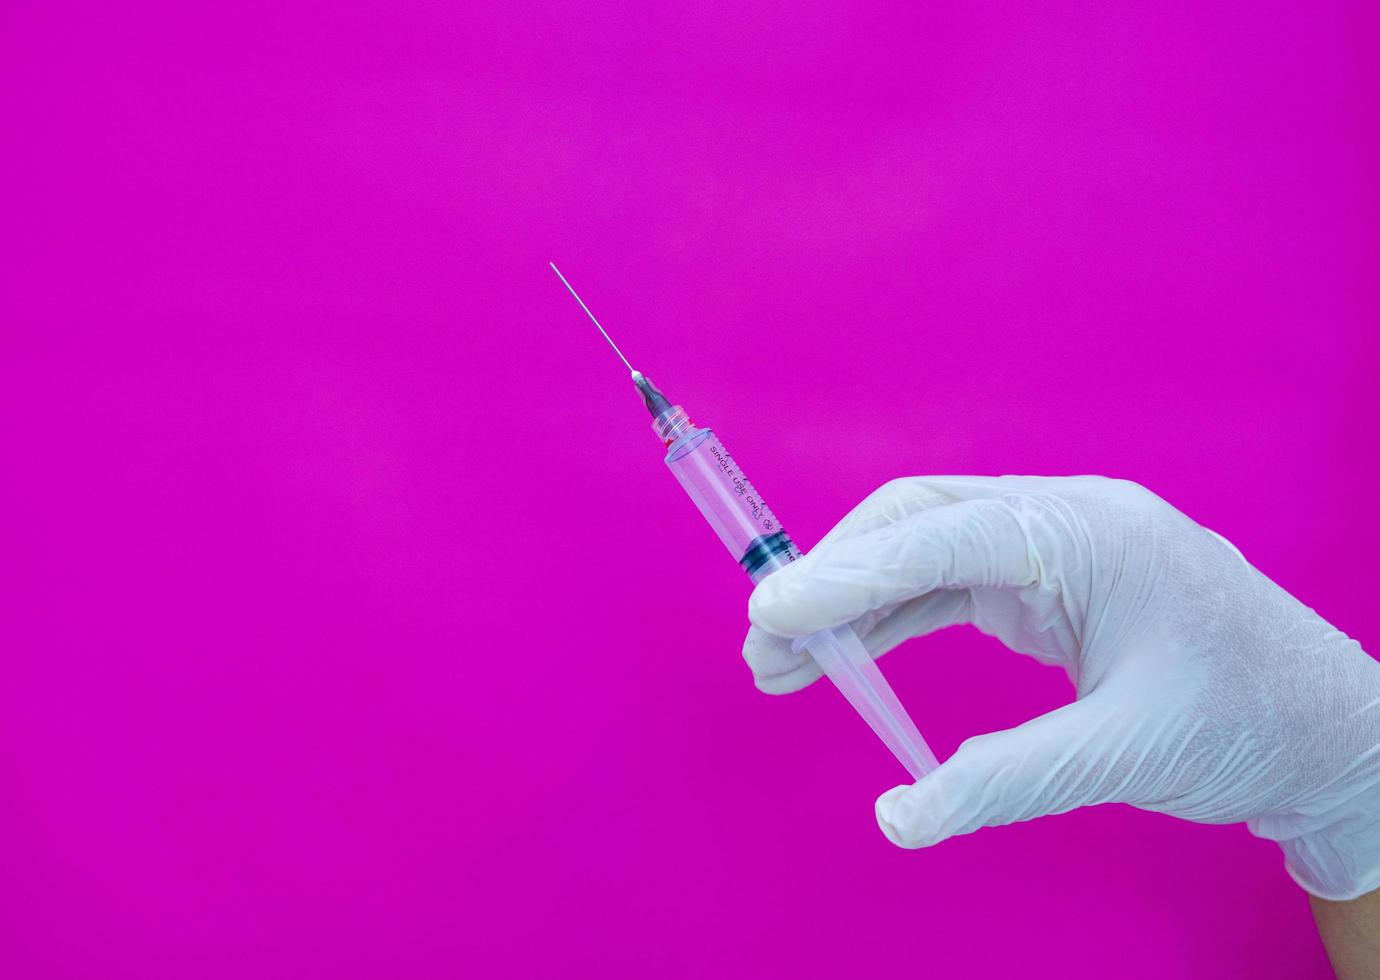 een gehandschoende hand op een roze achtergrond, met een medische spuit die wordt gebruikt om medicijnen en vitamines in het lichaam te injecteren. foto